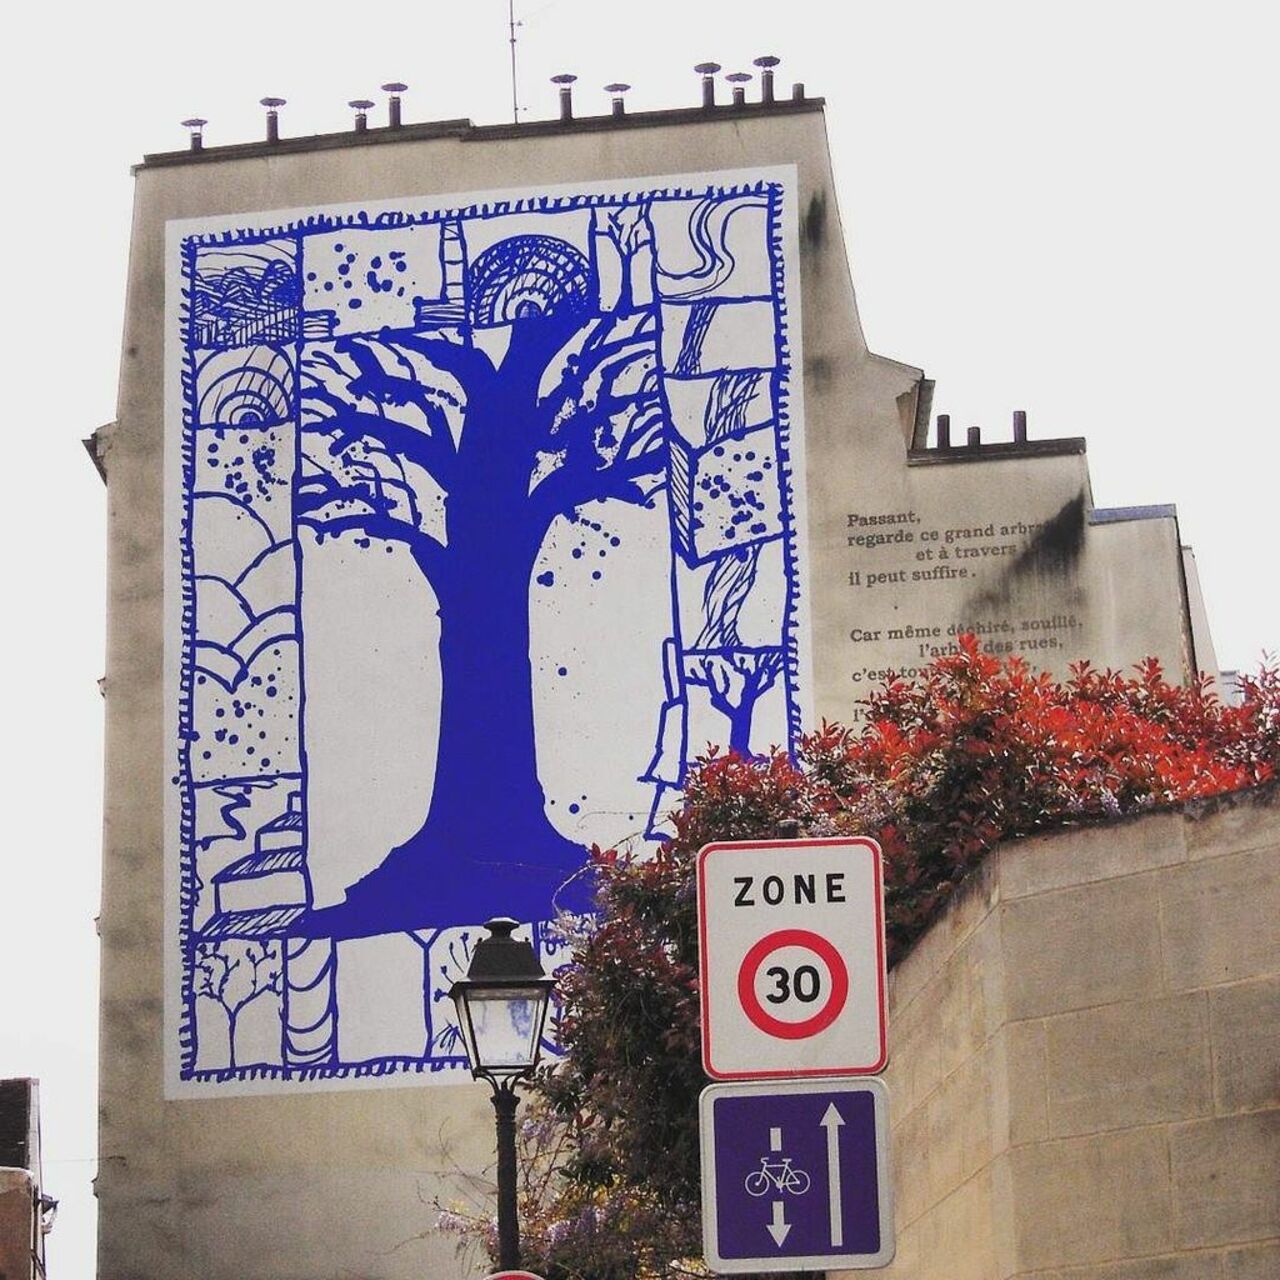 From #Paris @dsb_graff #dsb_graff @rsa_graffiti @streetawesome #streetart #urbanart #graffitiart #graffiti #streeta… https://t.co/9kqzyo7fgu